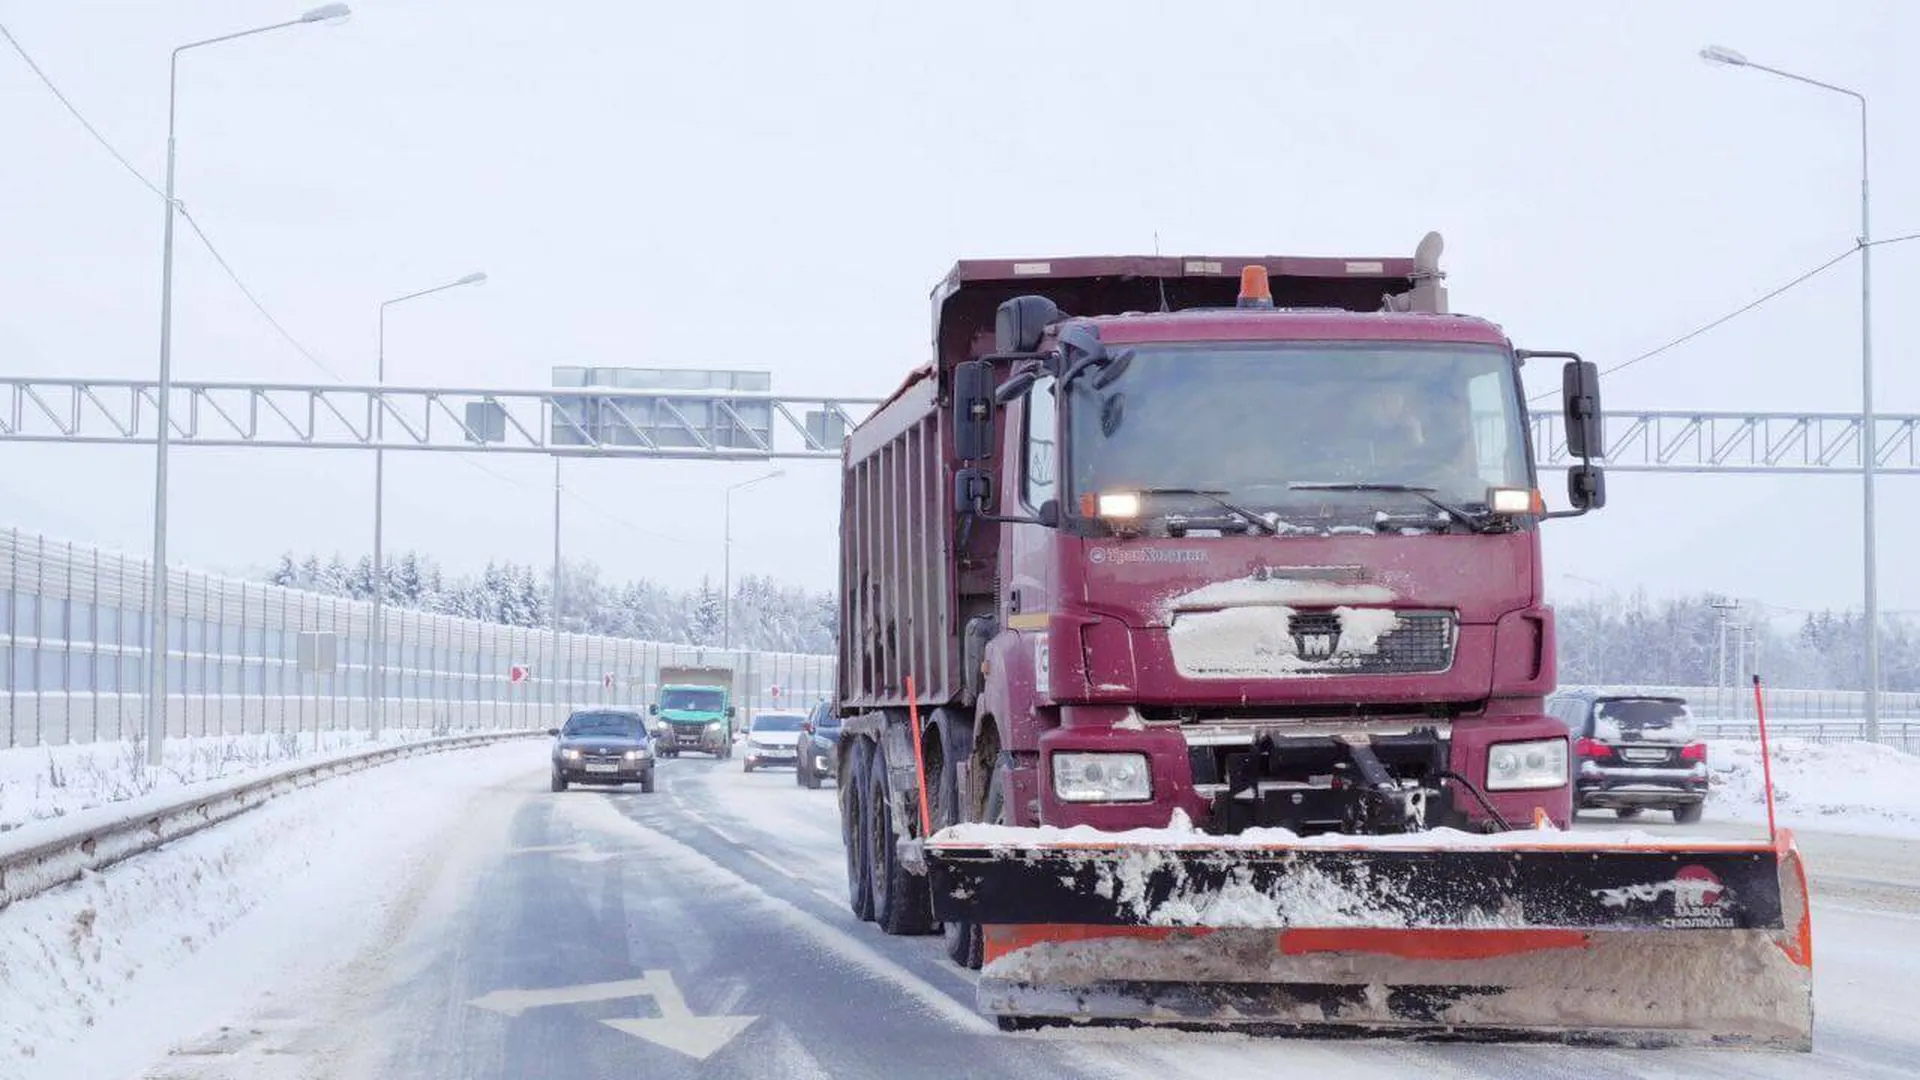 Пресс-служба министерства транспорта и дорожной инфраструктуры Московской области